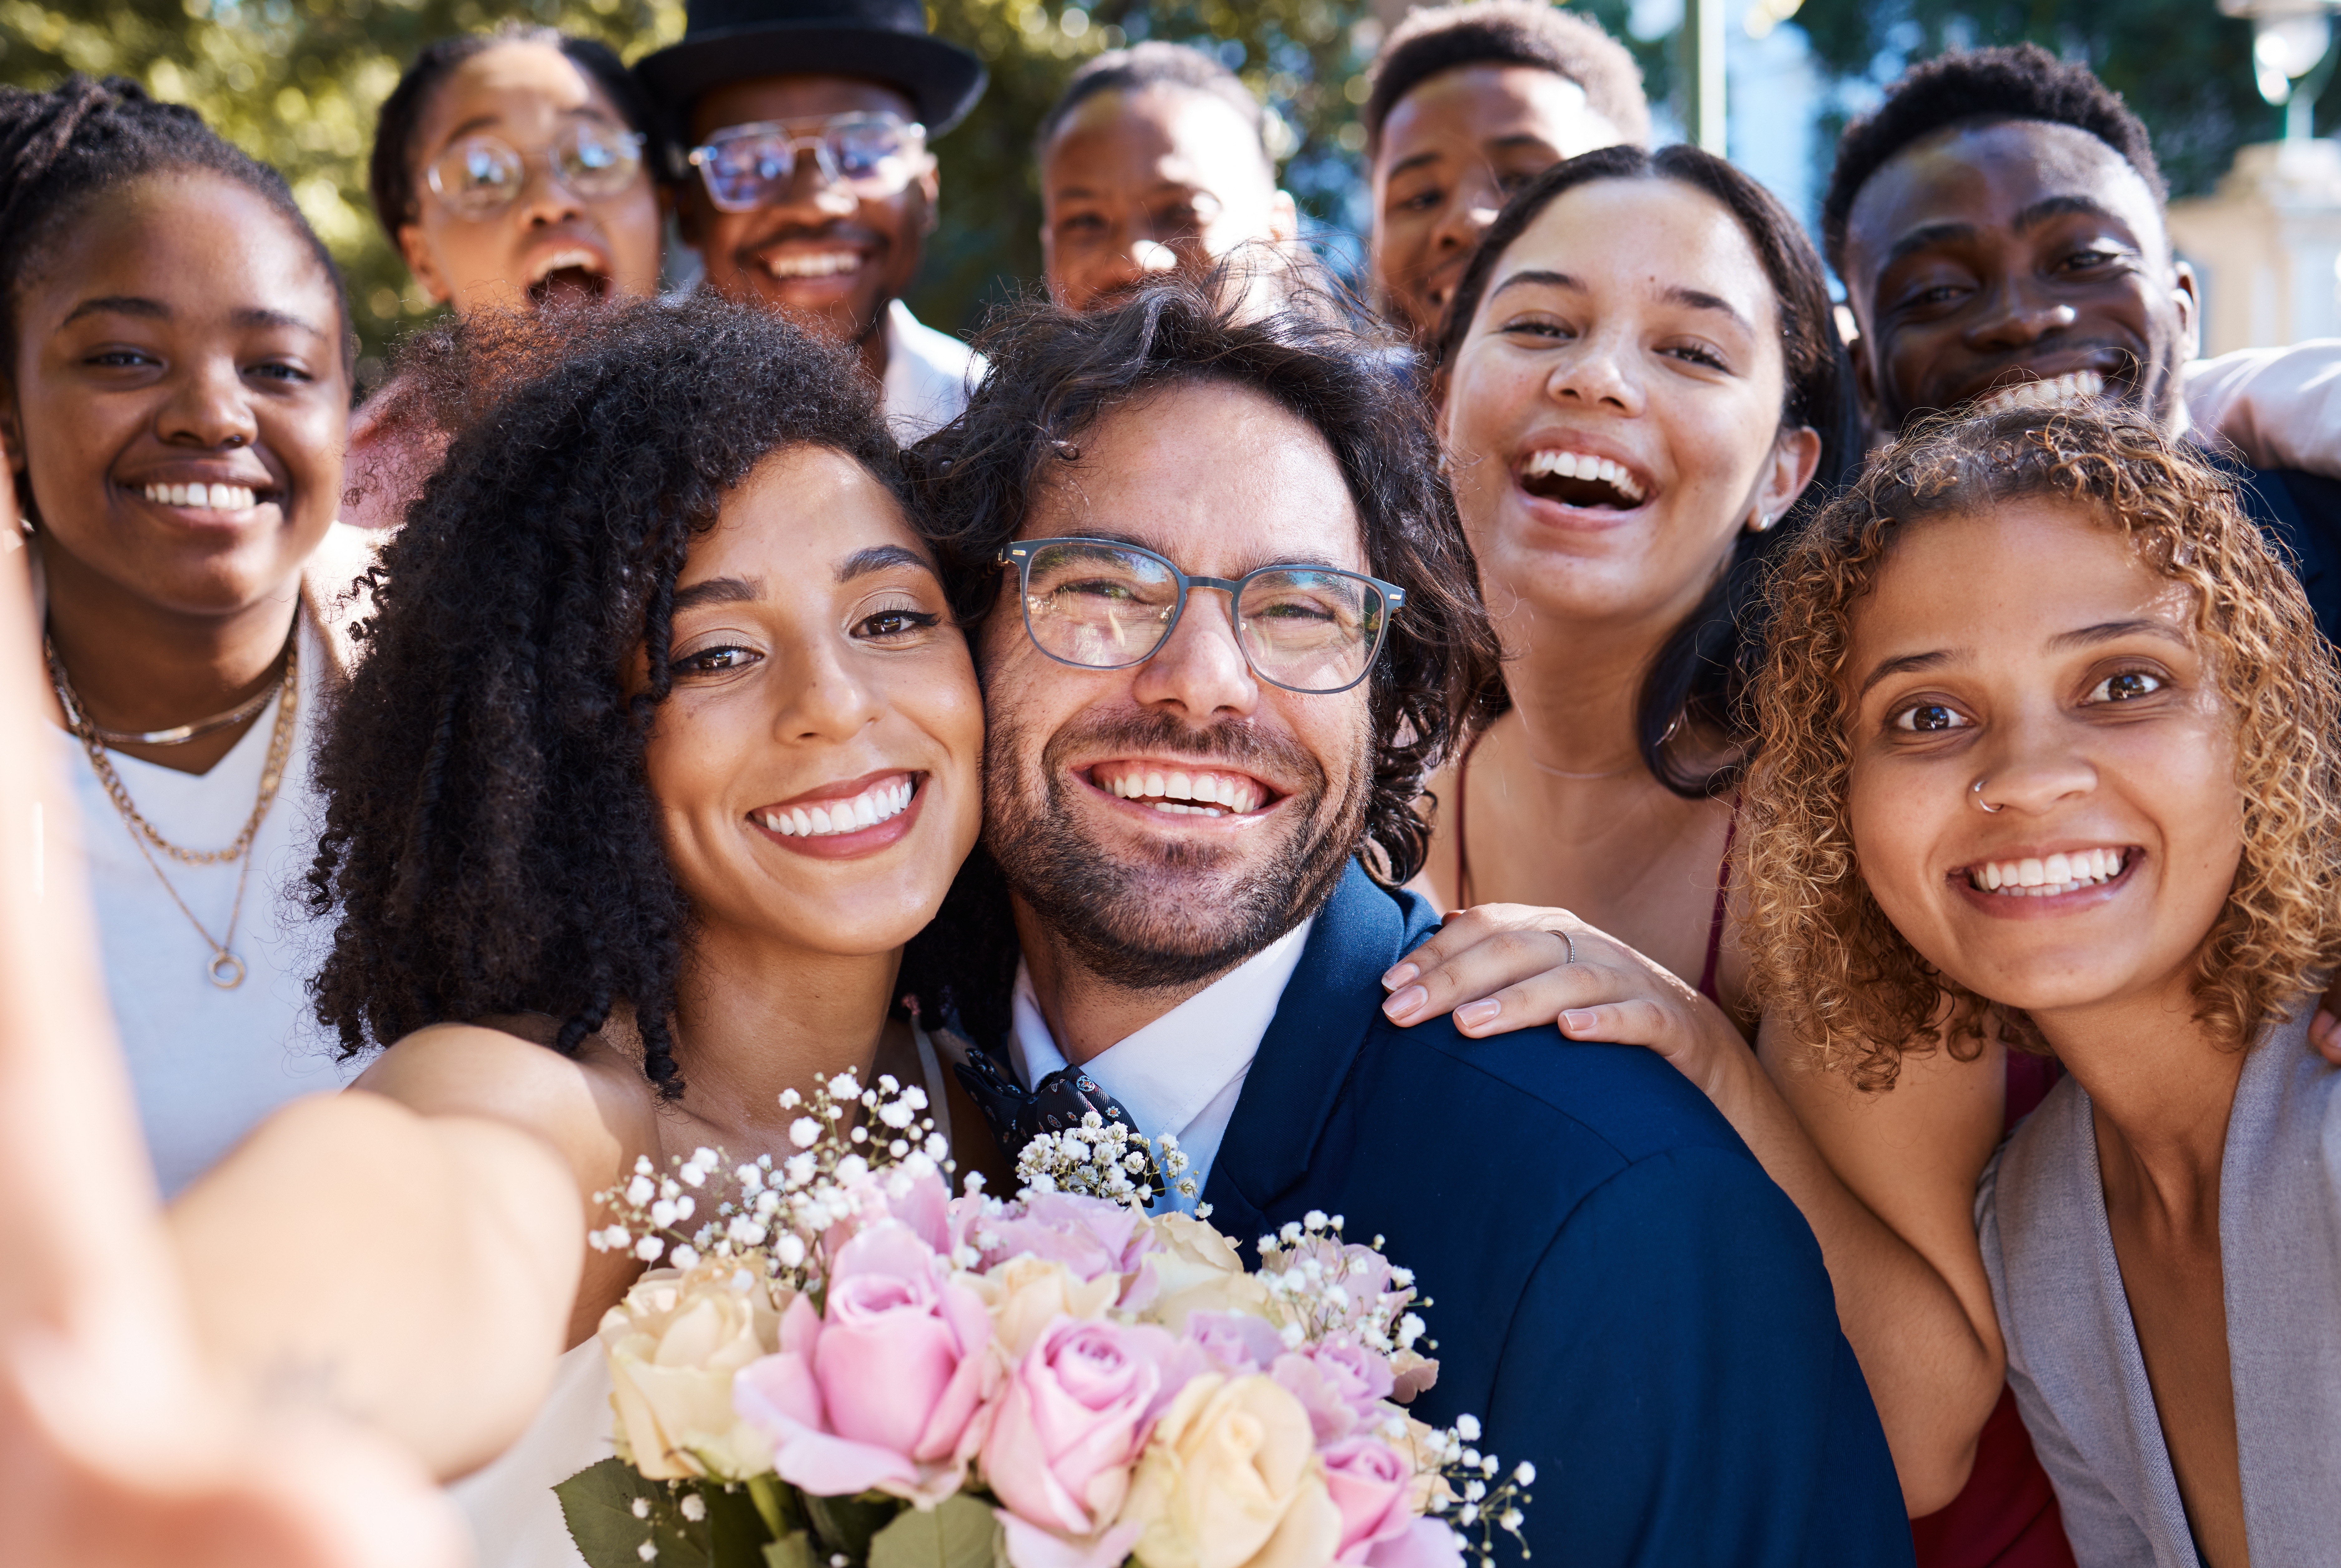 Une photo de groupe de mariage | Source : Shutterstock